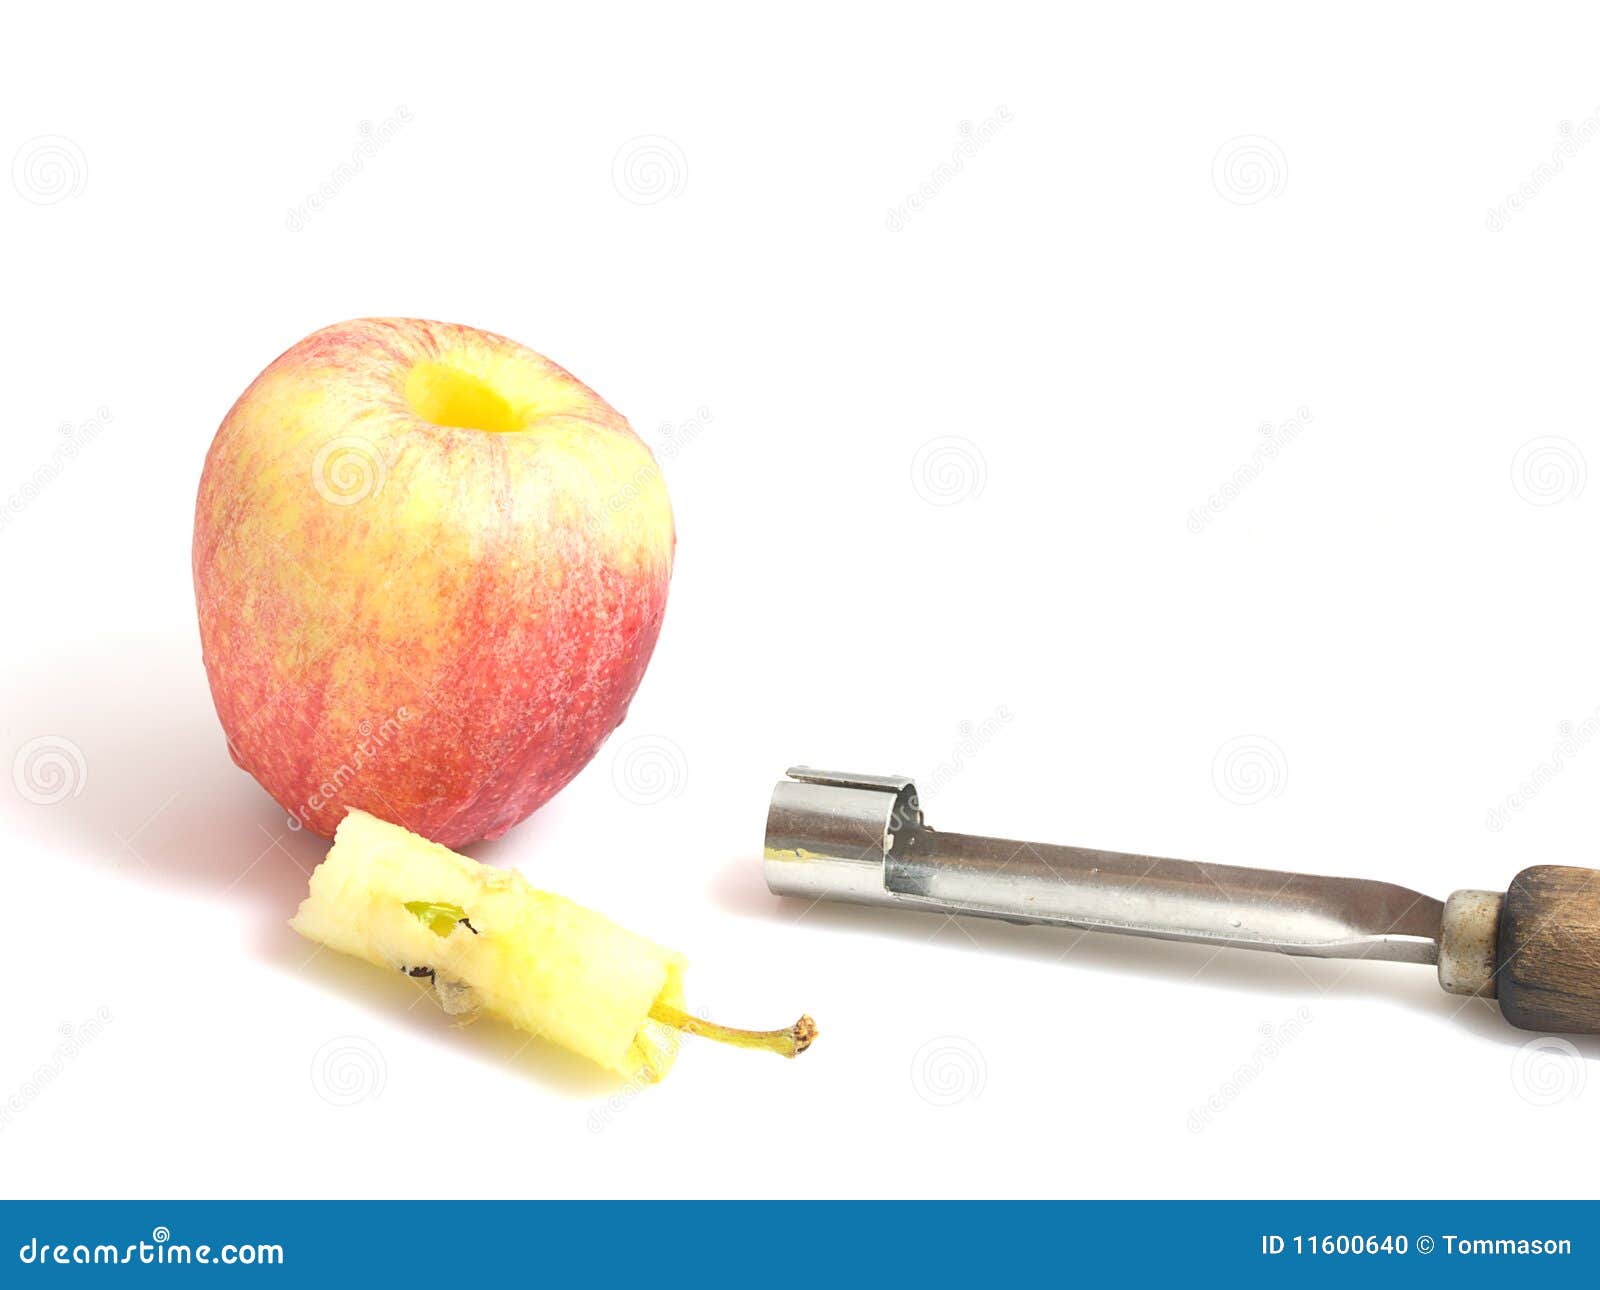 Перед обработкой из яблок иногда вырезают сердцевину. Приспособление для вырезания сердцевины яблок. Яблоко без сердцевины. Для вырезания сердцевины яблок. Сердцевина яблока.